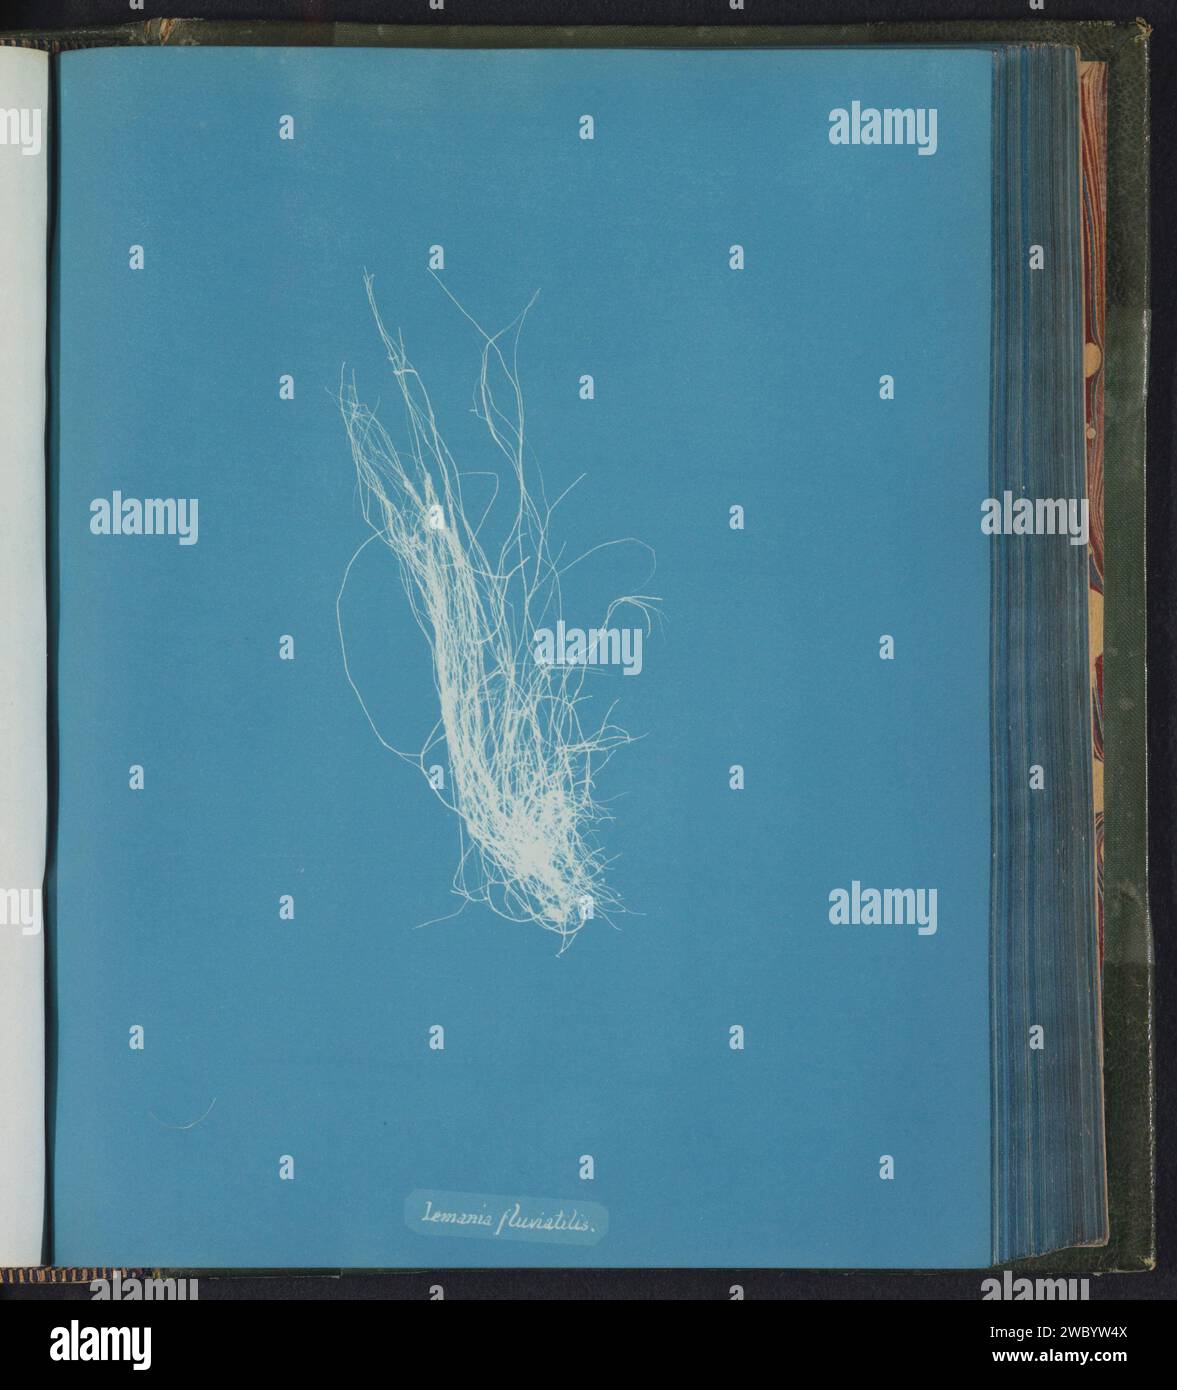 Lemania fluviatilis [= Lemanea fluviatilis], Anna Atkins, c. 1843 - c. 1853 photographie Royaume-Uni support photographique algues cyanotypes, algues marines Banque D'Images